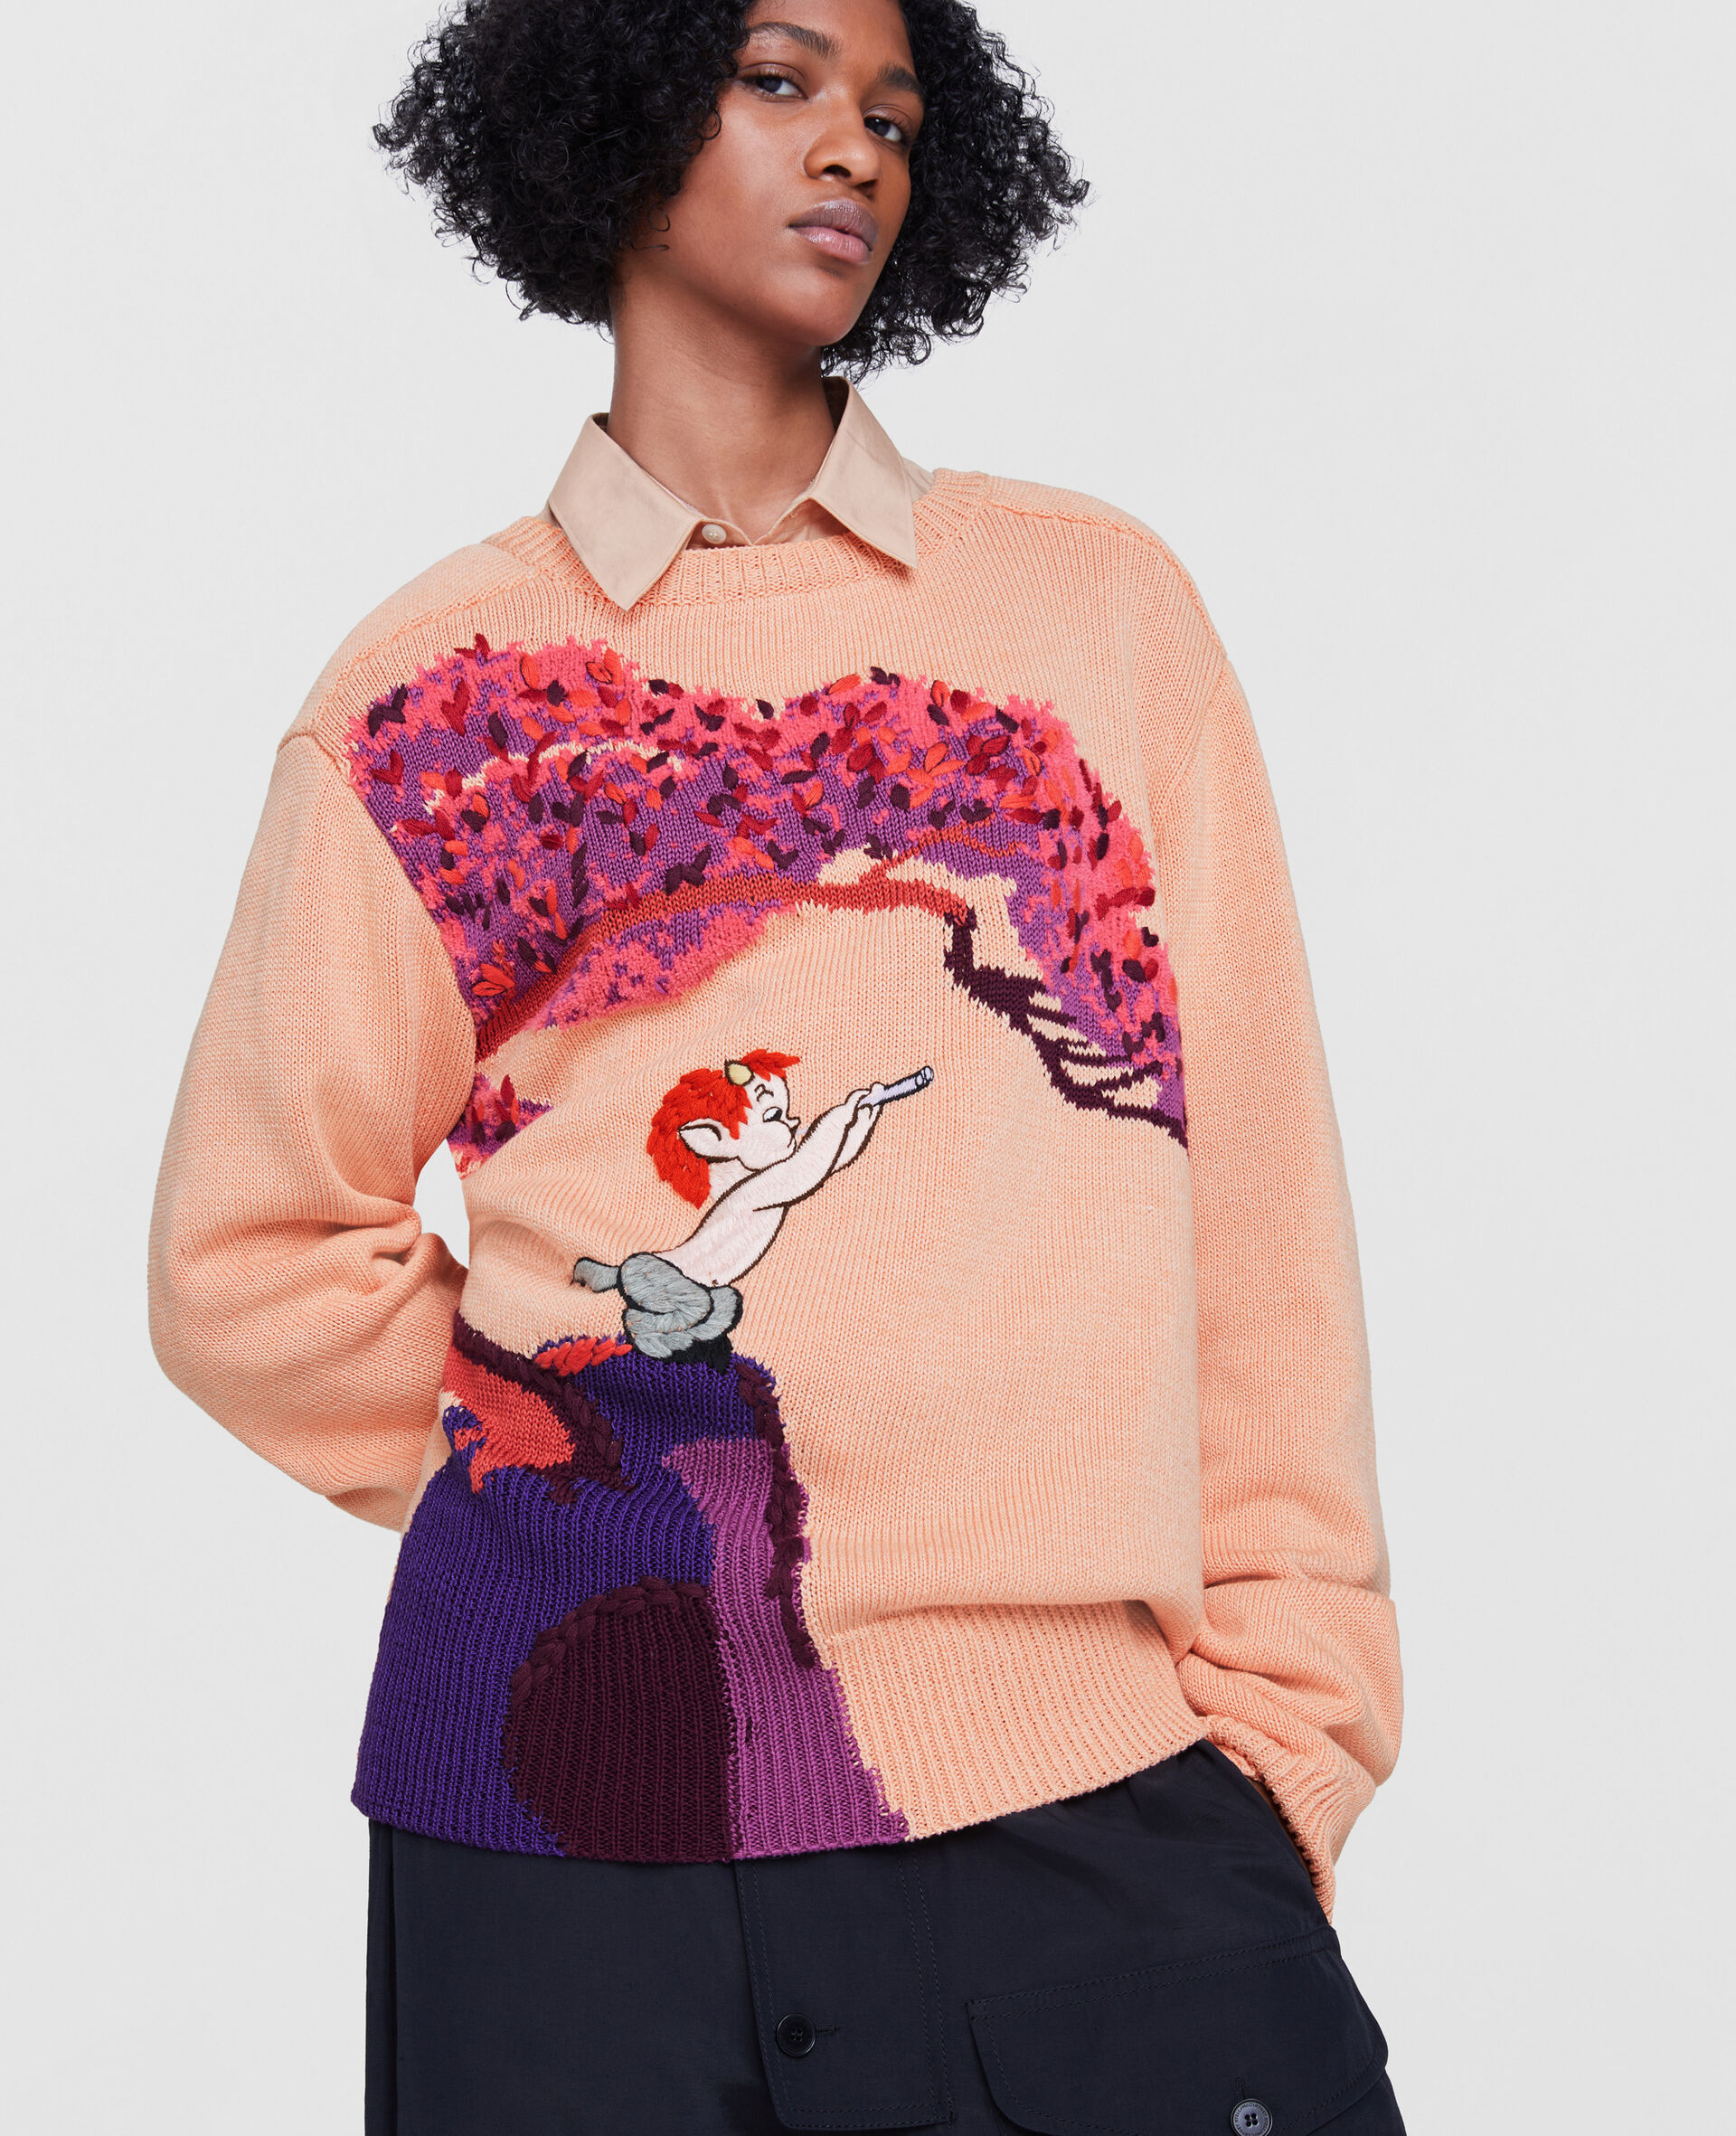 Fantasia Landscape Intarsia Knit Sweater-Orange-large image number 5